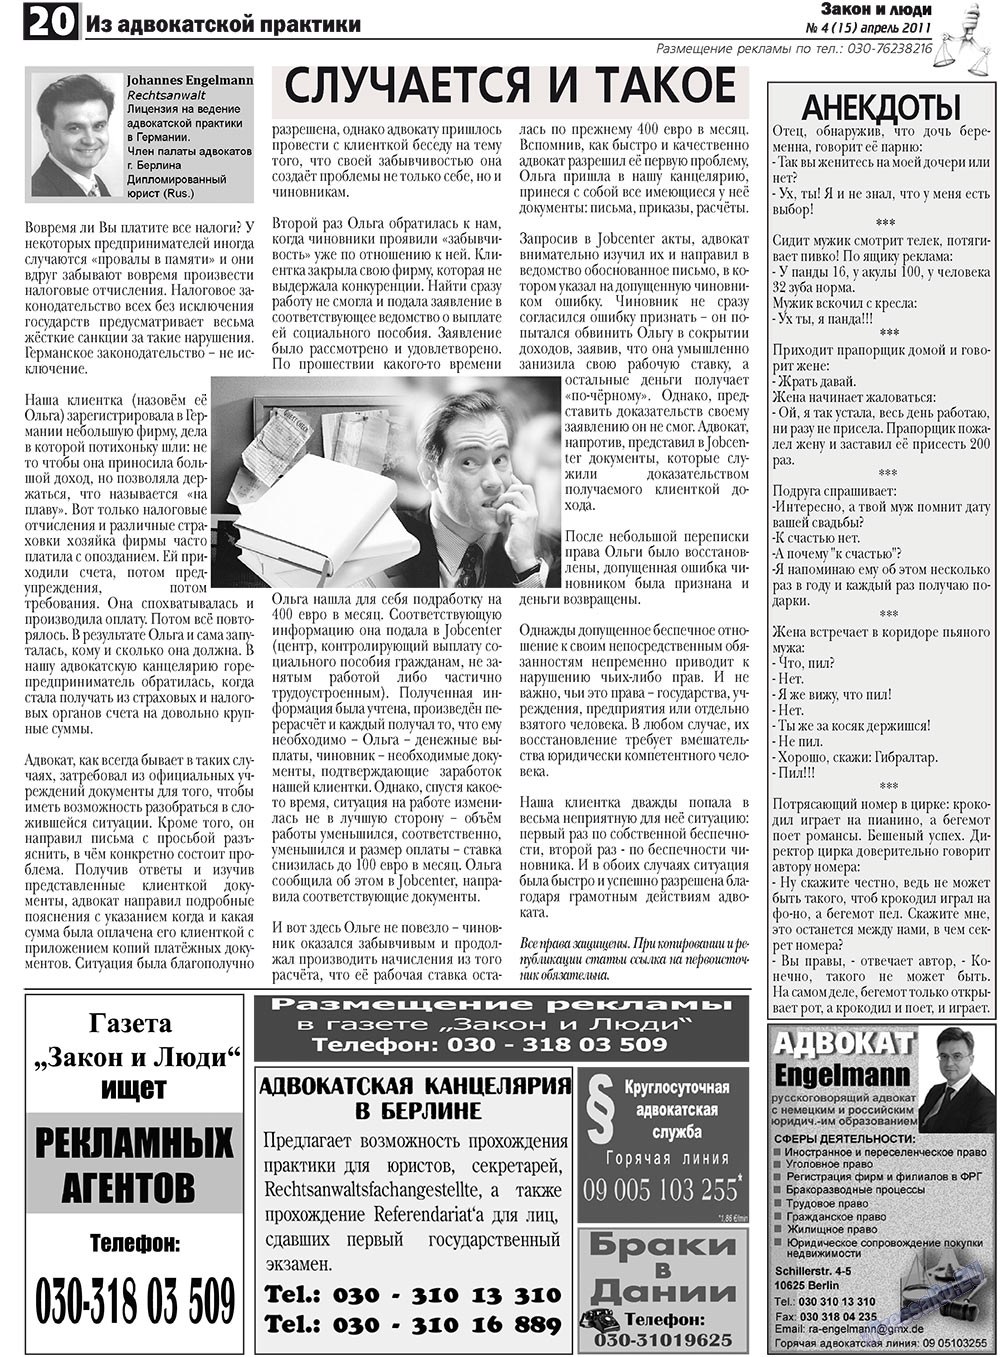 Закон и люди, газета. 2011 №4 стр.20